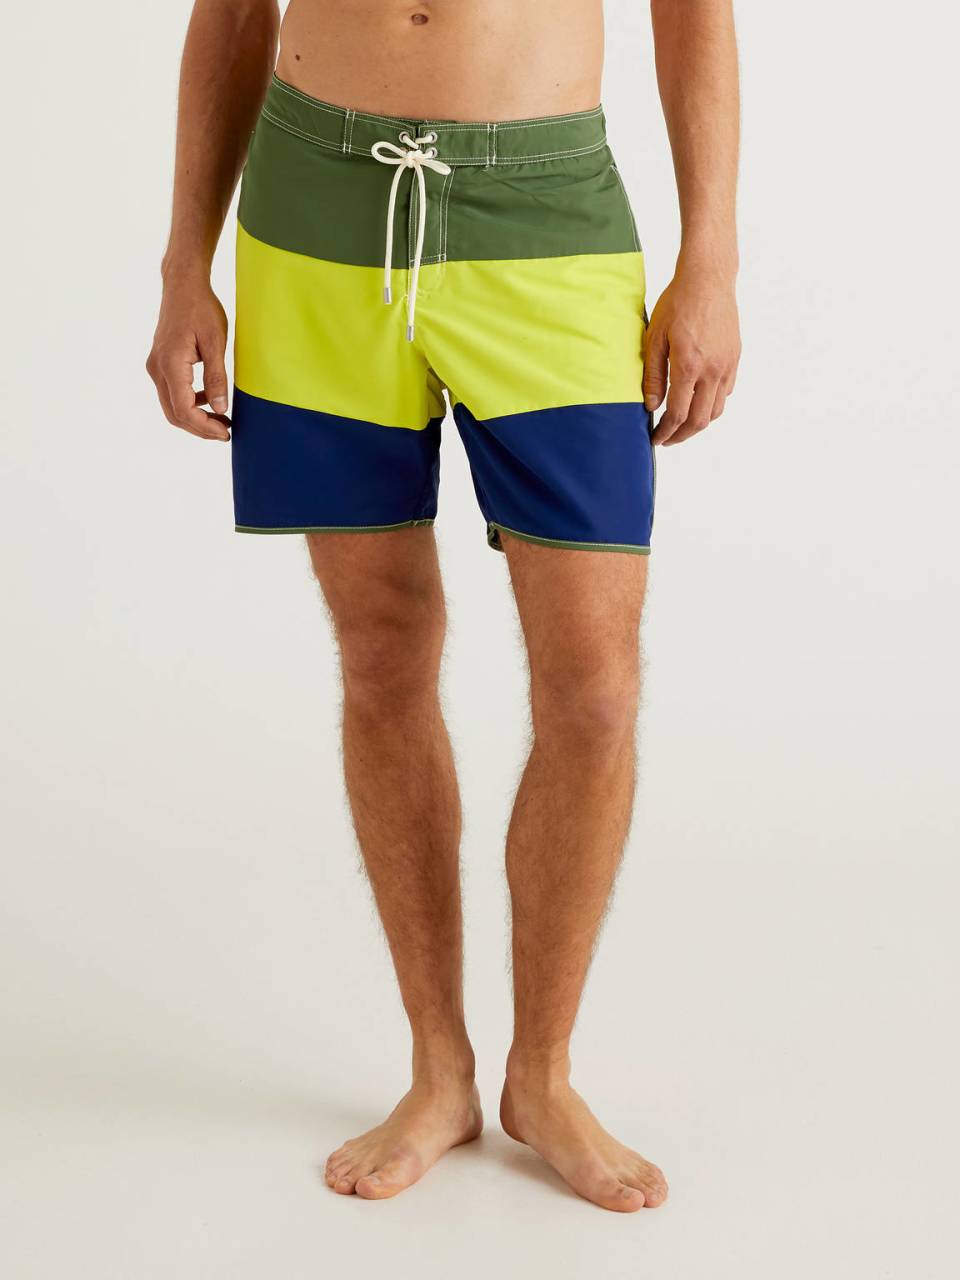 Benetton Color block swim trunks. 1